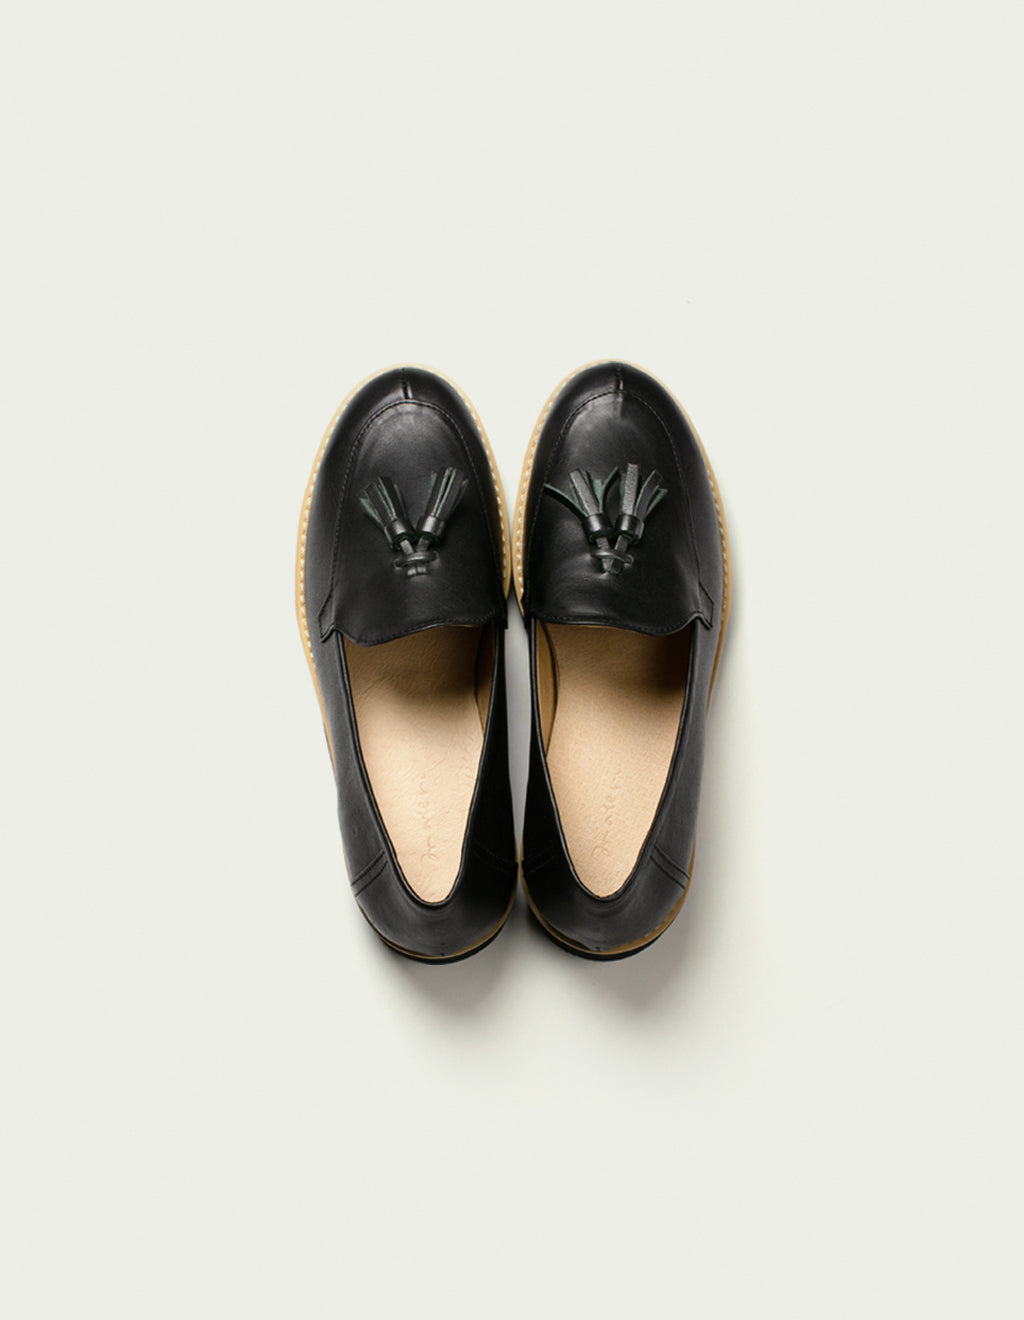 【 materi 】 a-02 | Leather Shoes | matte black